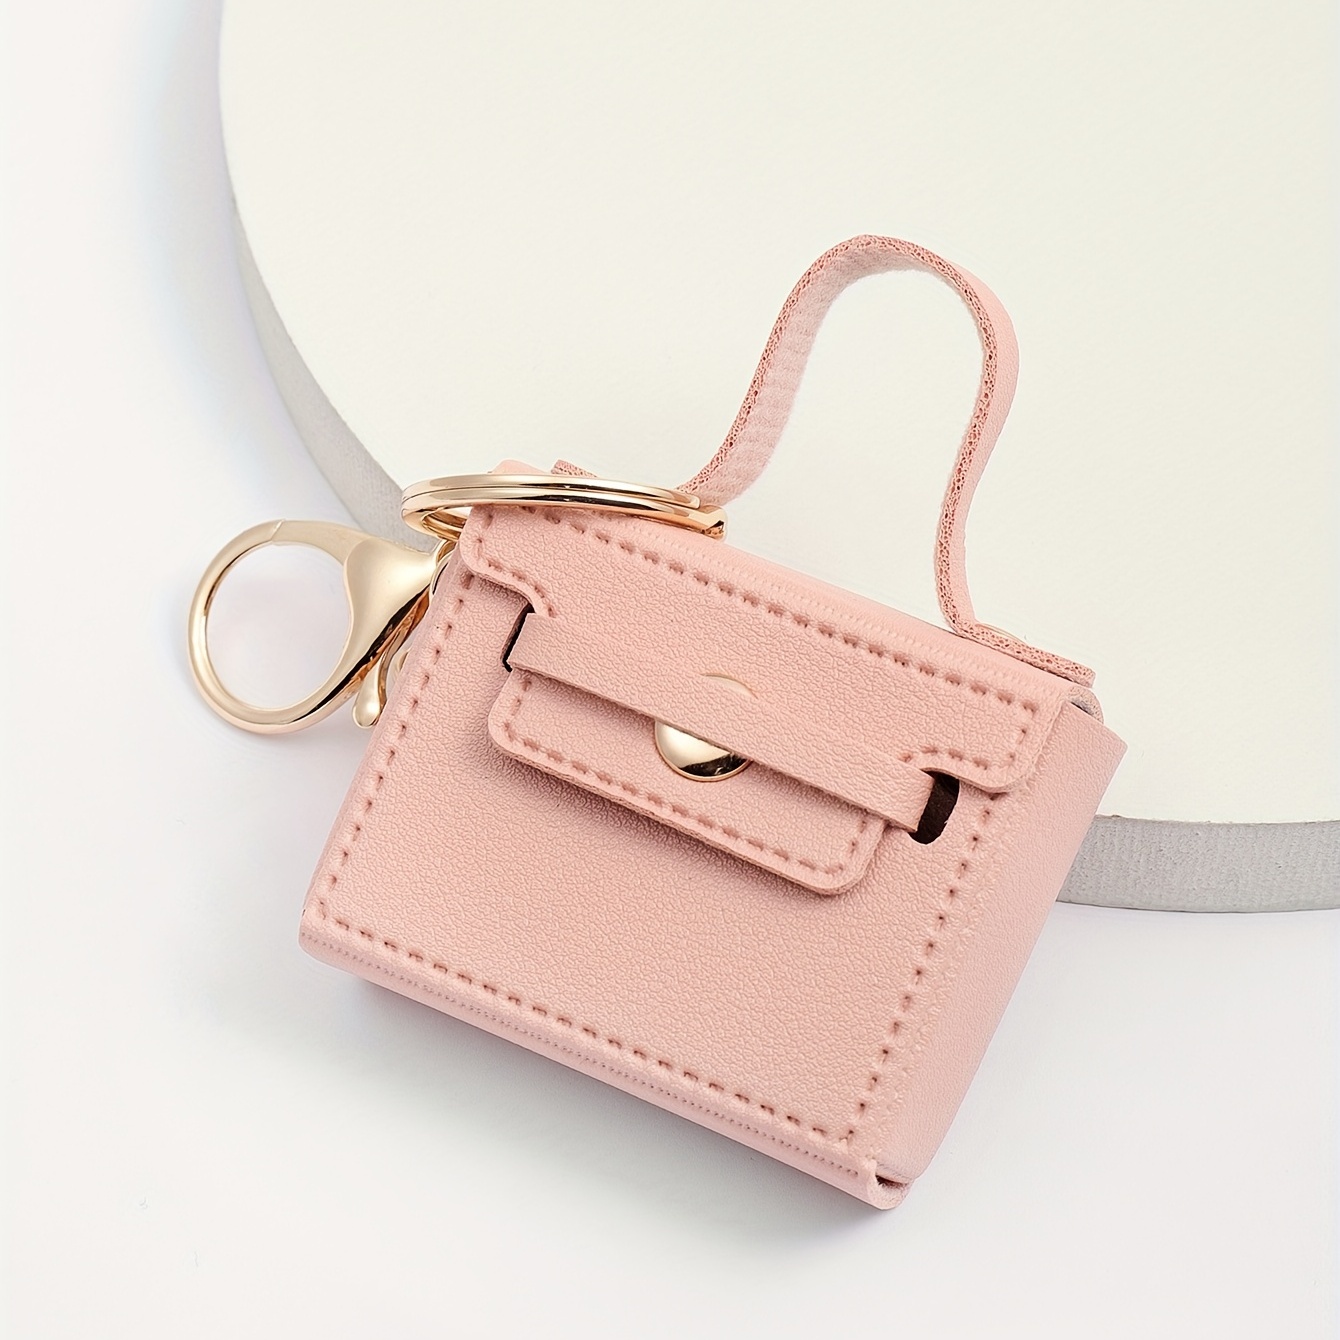 Designer Leather Handbags, Purses & Accessories